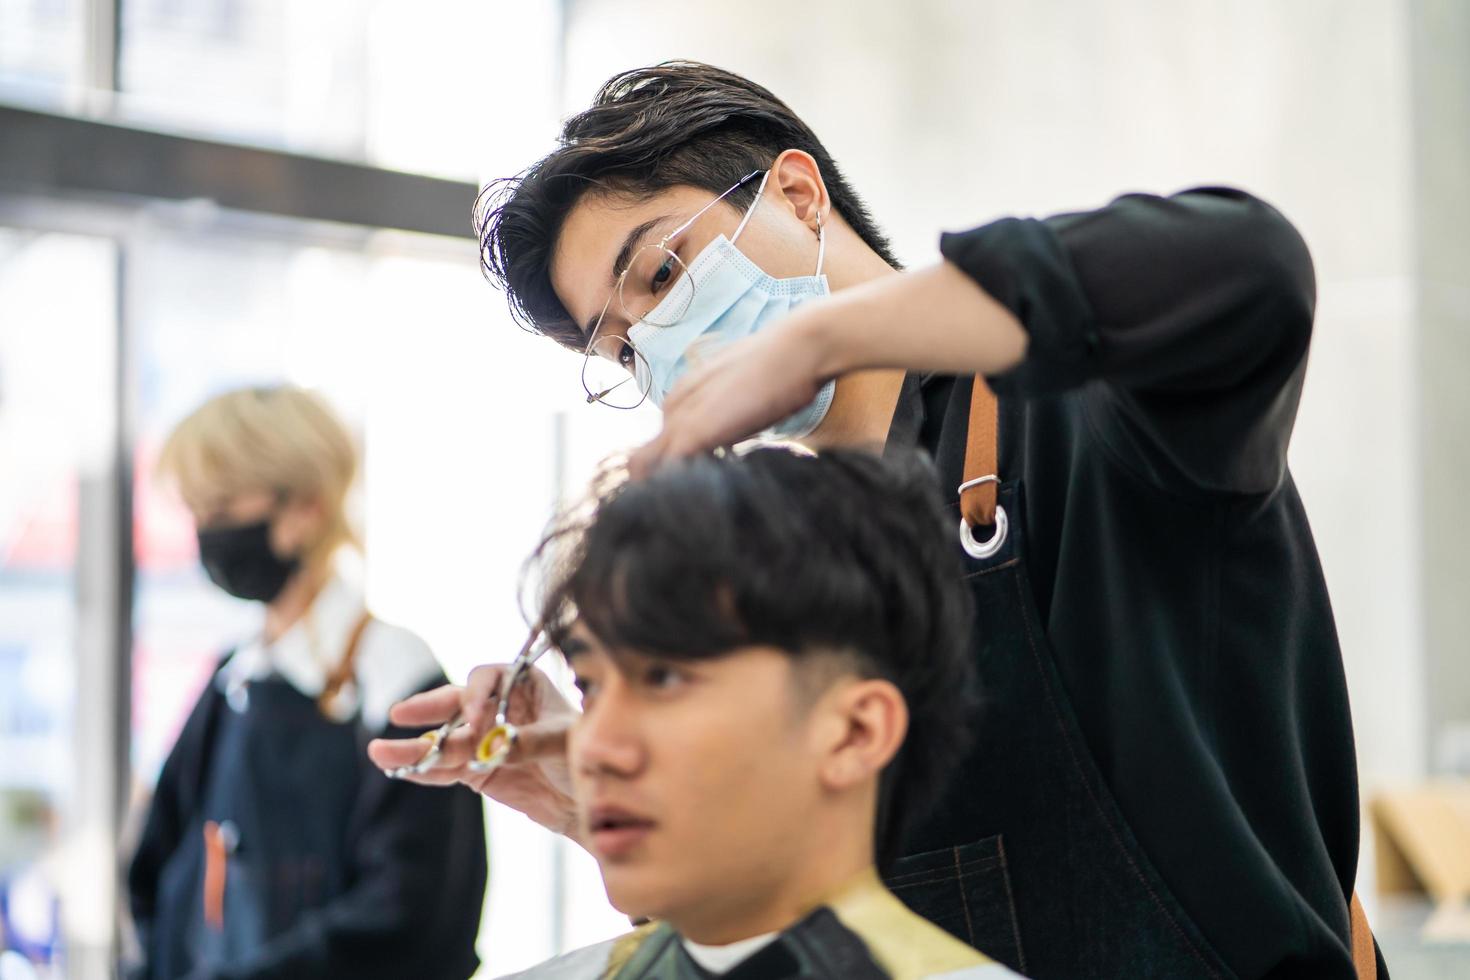 homens asiáticos têm estilo com o cliente enquanto cortam o cabelo e usam máscara cirúrgica enquanto penteiam o cabelo para o cliente. ocupação profissional, serviço de beleza e moda novo normal foto